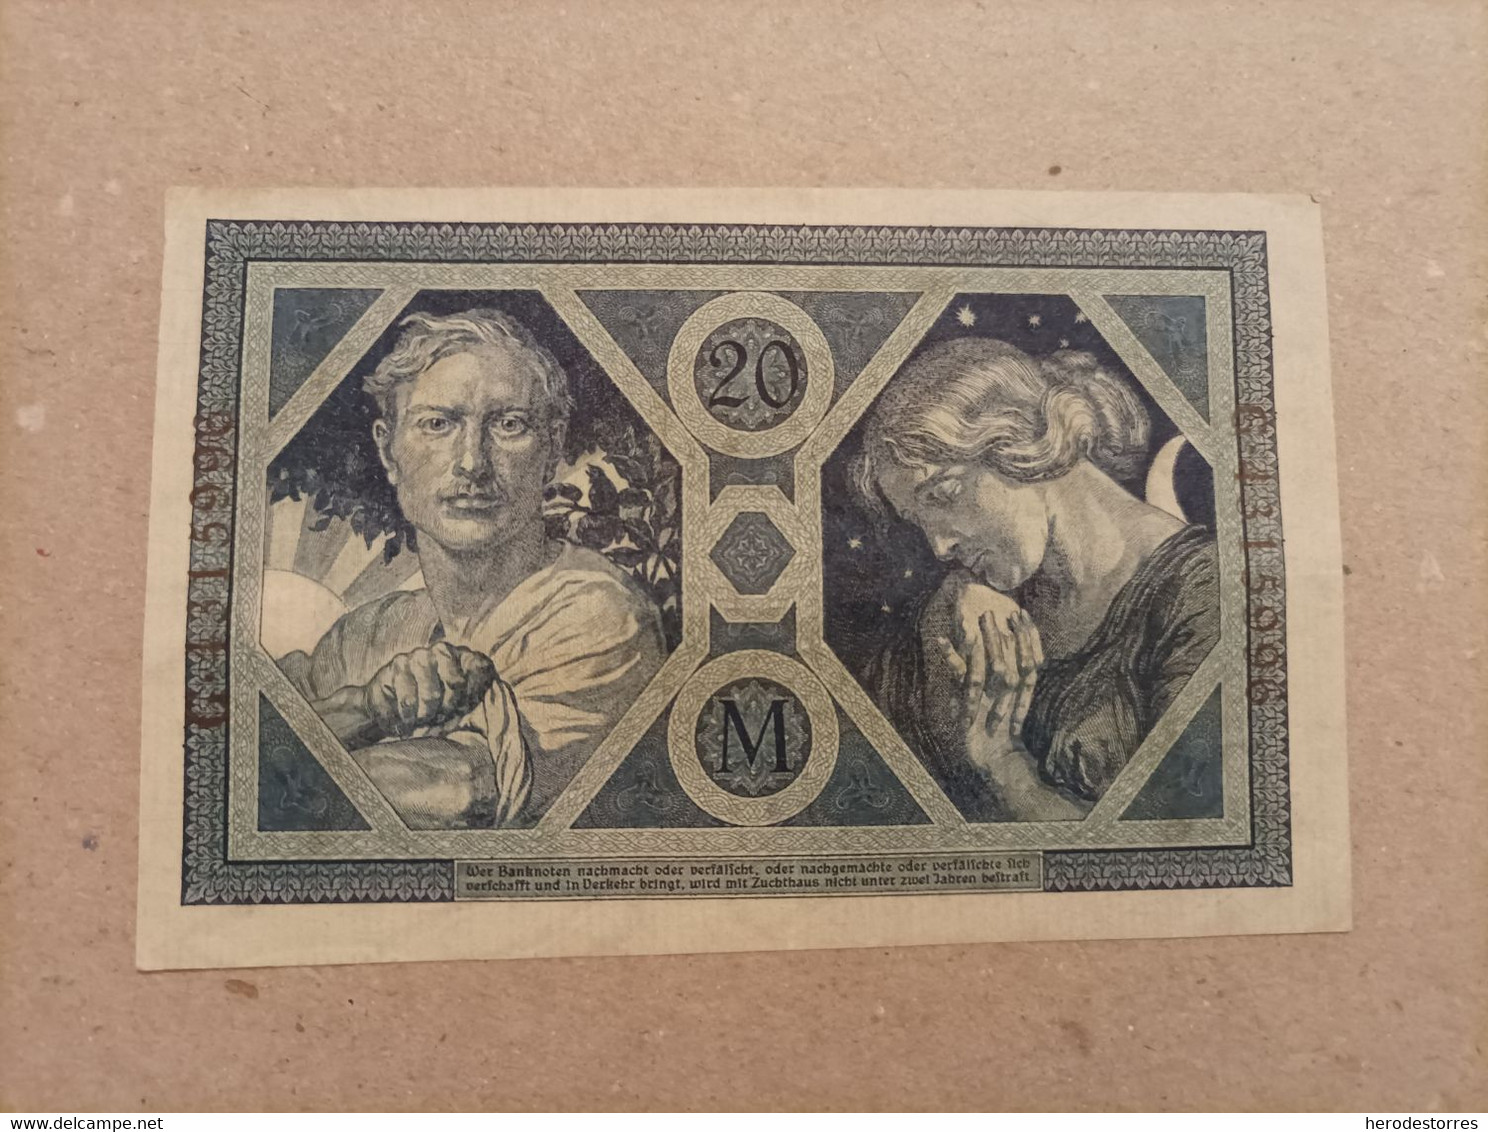 Billete De Alemania De 10 Mark, Año 1918, AUNC - To Identify